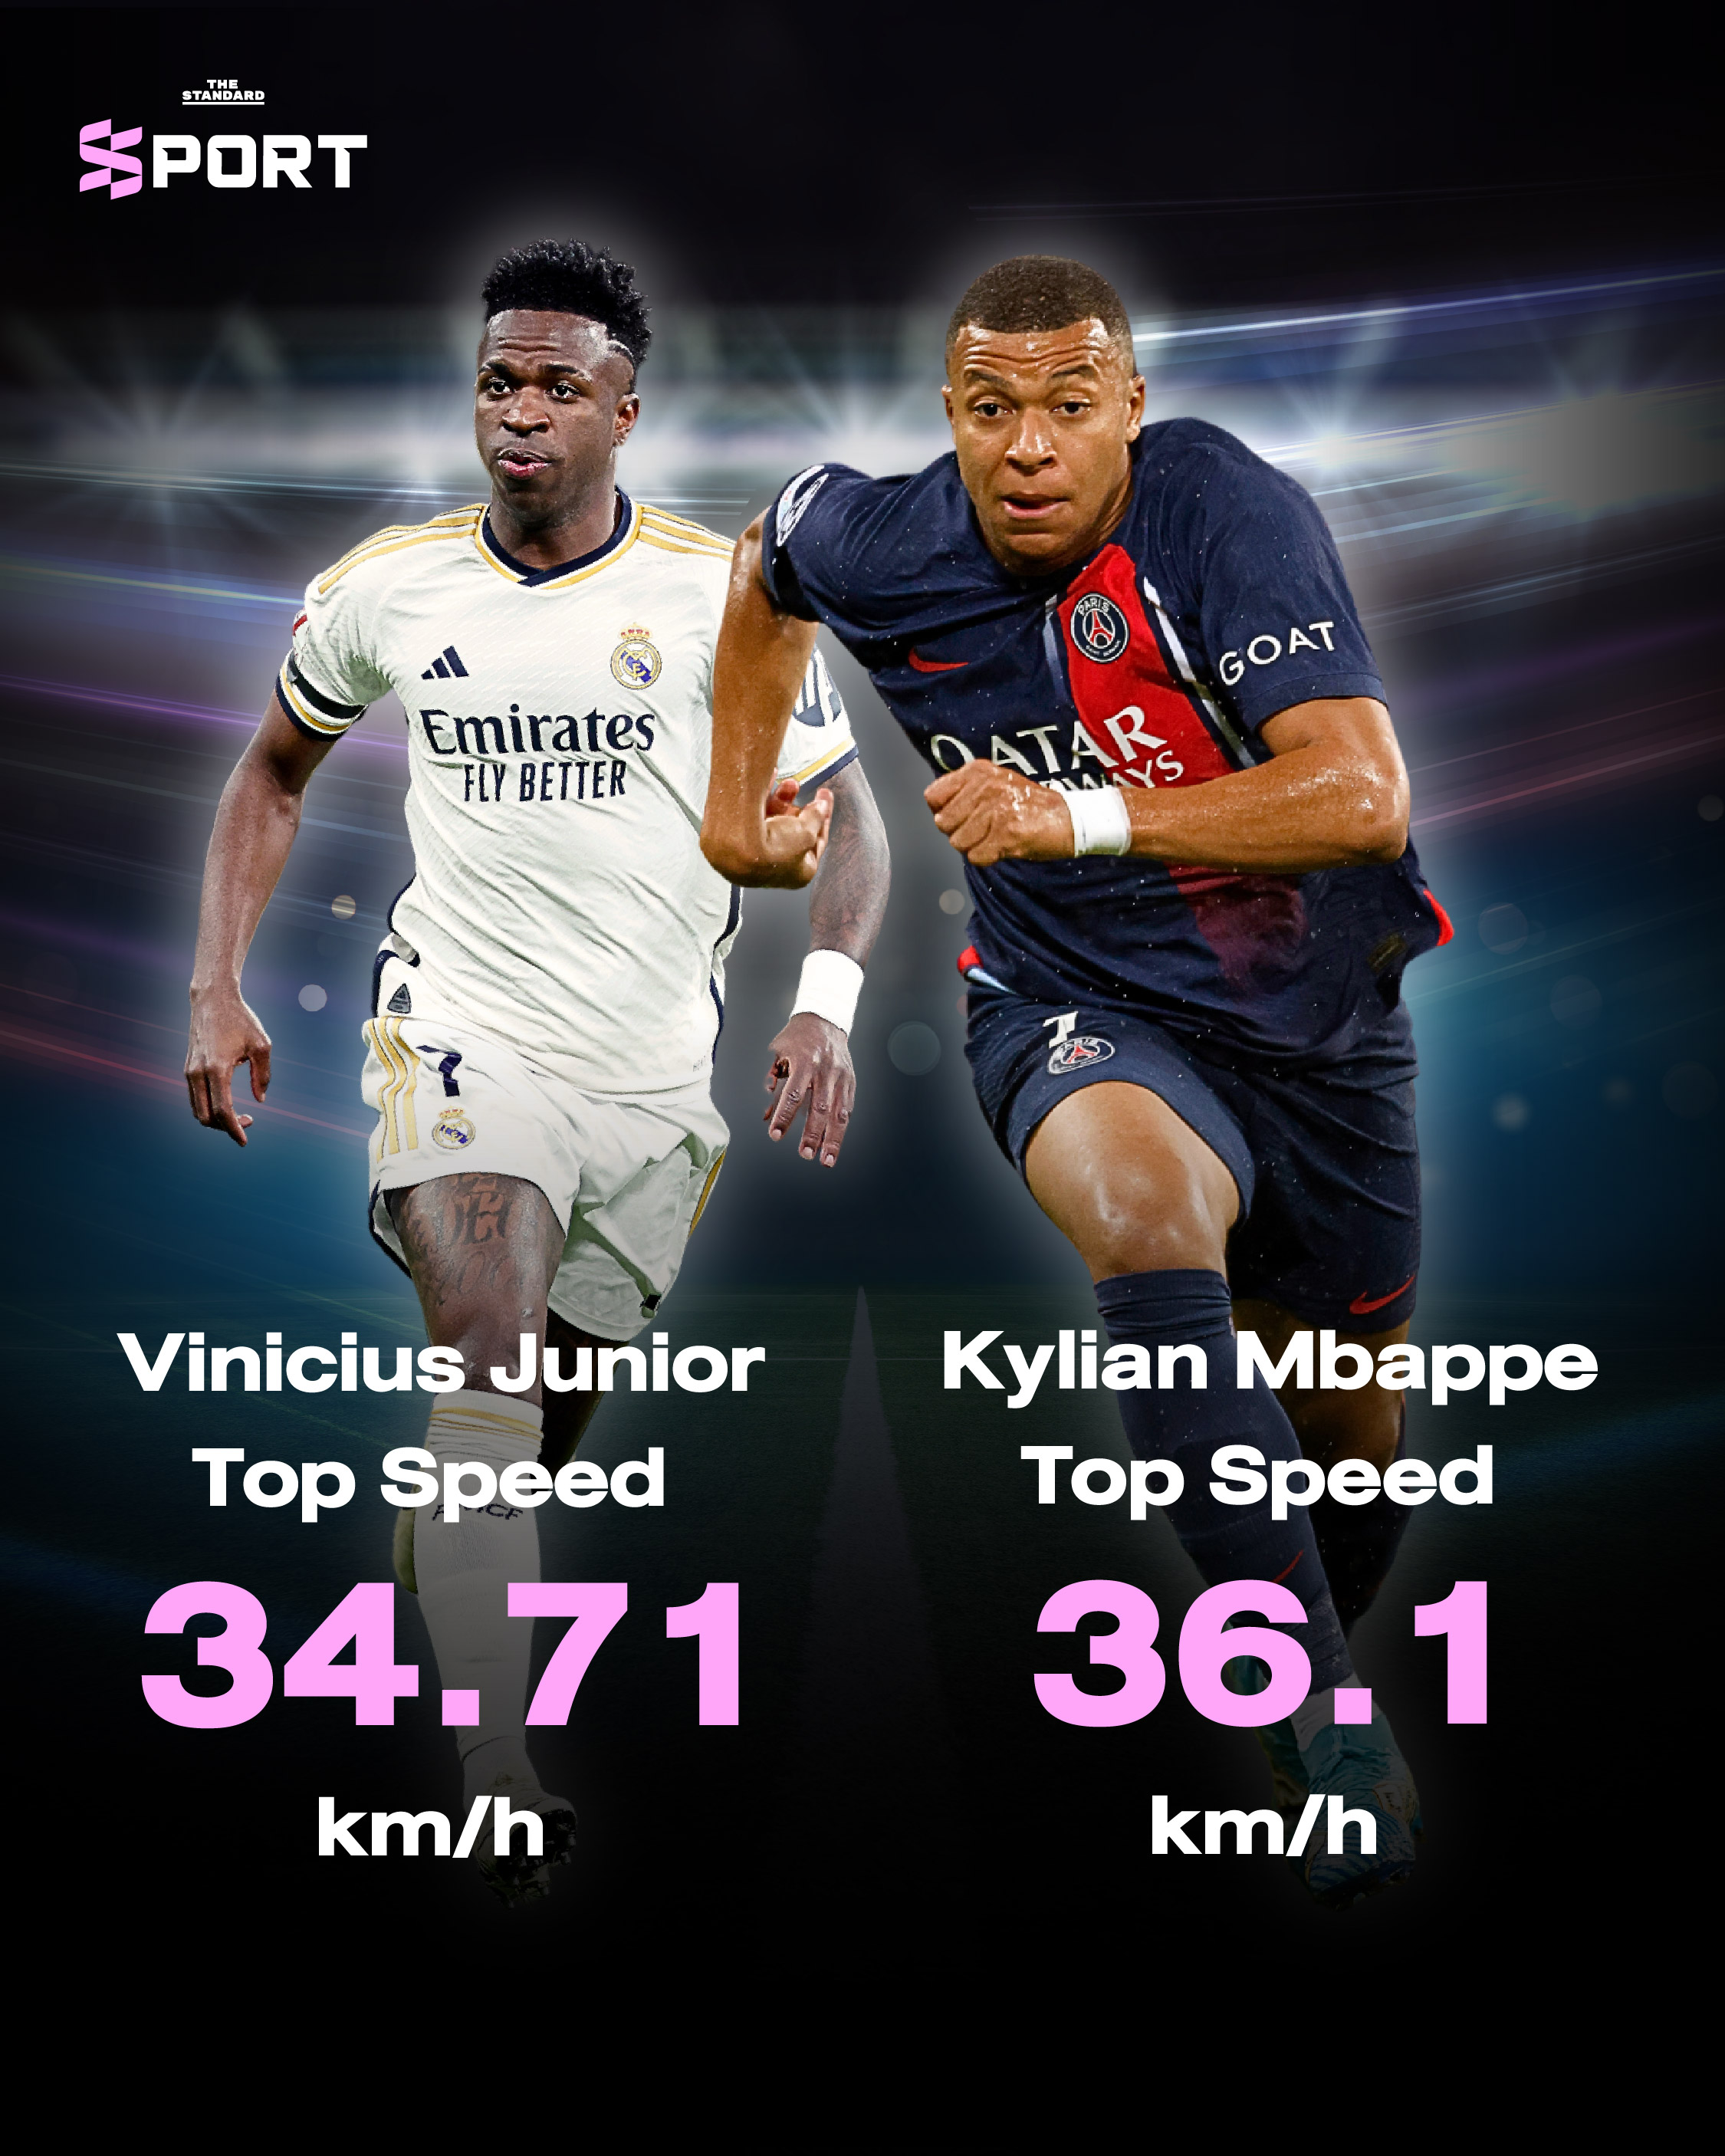 เทียบ ความเร็ว เอ็มบัปเป (Mbappe) กับ วินิซิอุส (Vinicius Jr.)